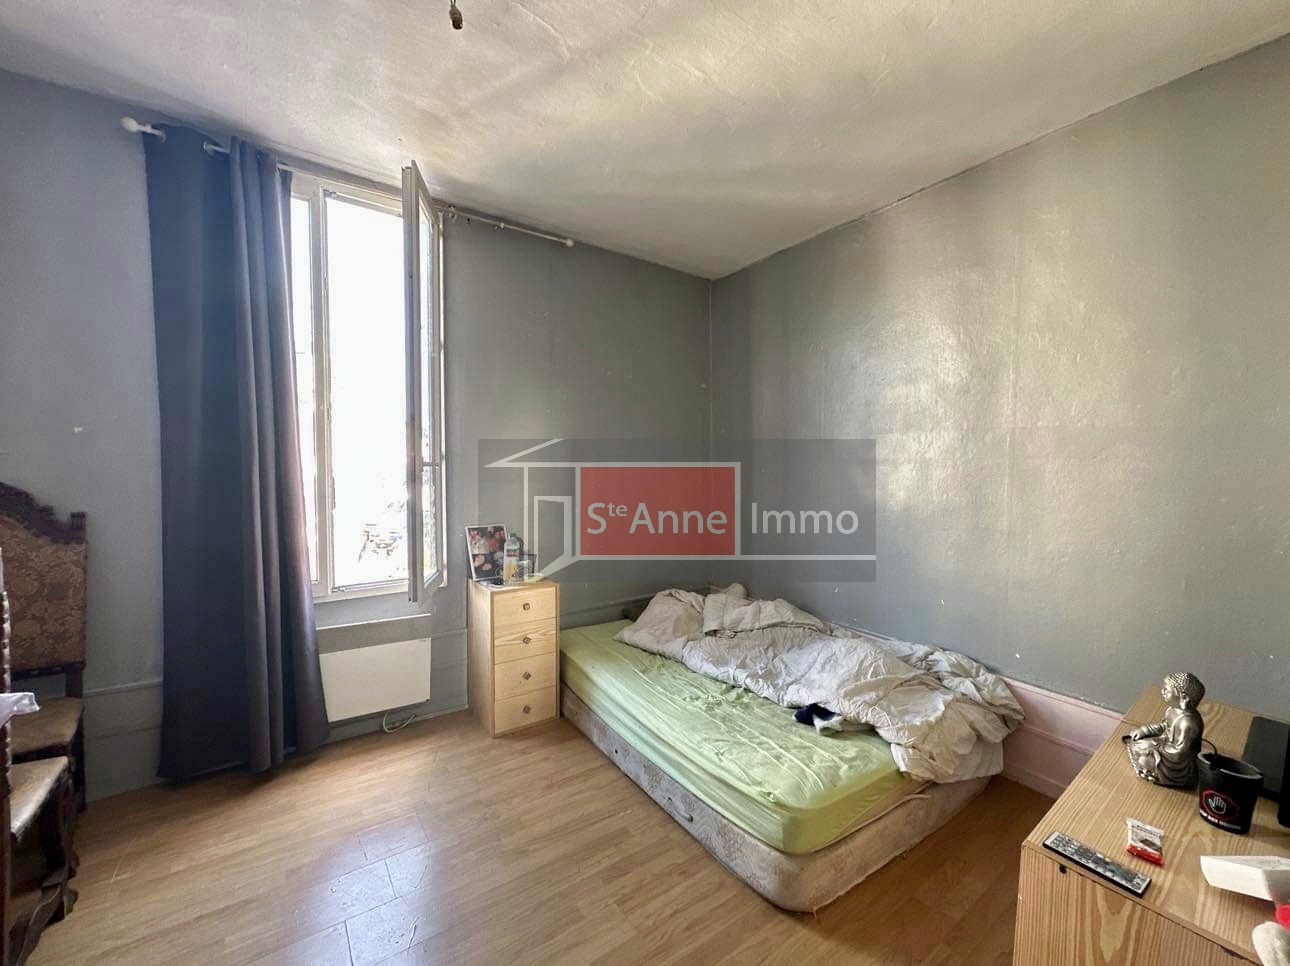 Immo80 – L'immobilier à Amiens et dans la Somme-PICQUIGNY – Investissement locatif – Maison – 60 m2 – 2 chambres – bureau – cour